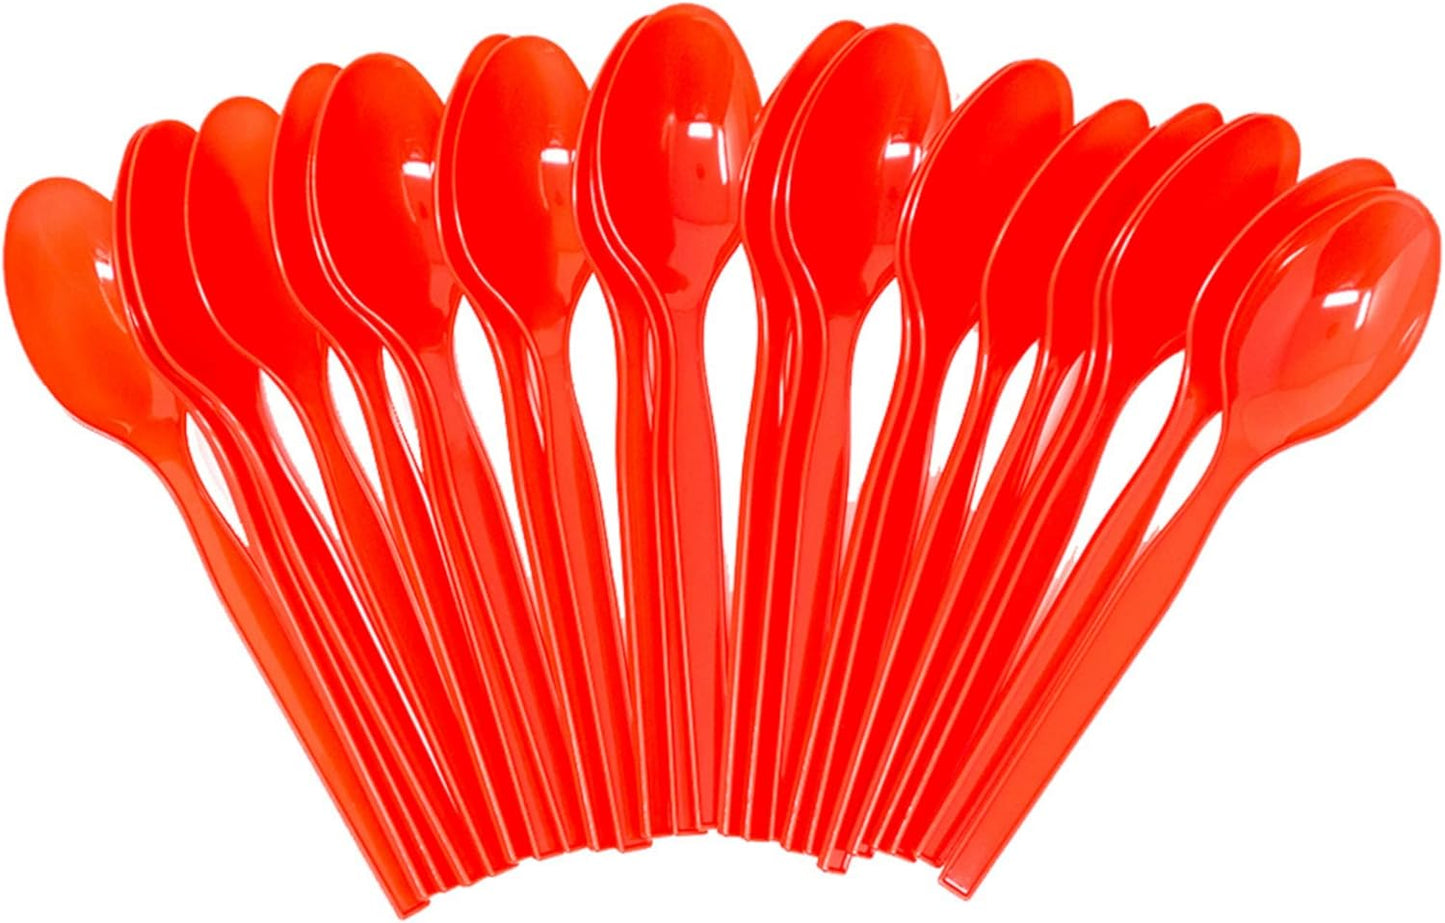 Red Plastic  Spoons 200 Packs (24 each)